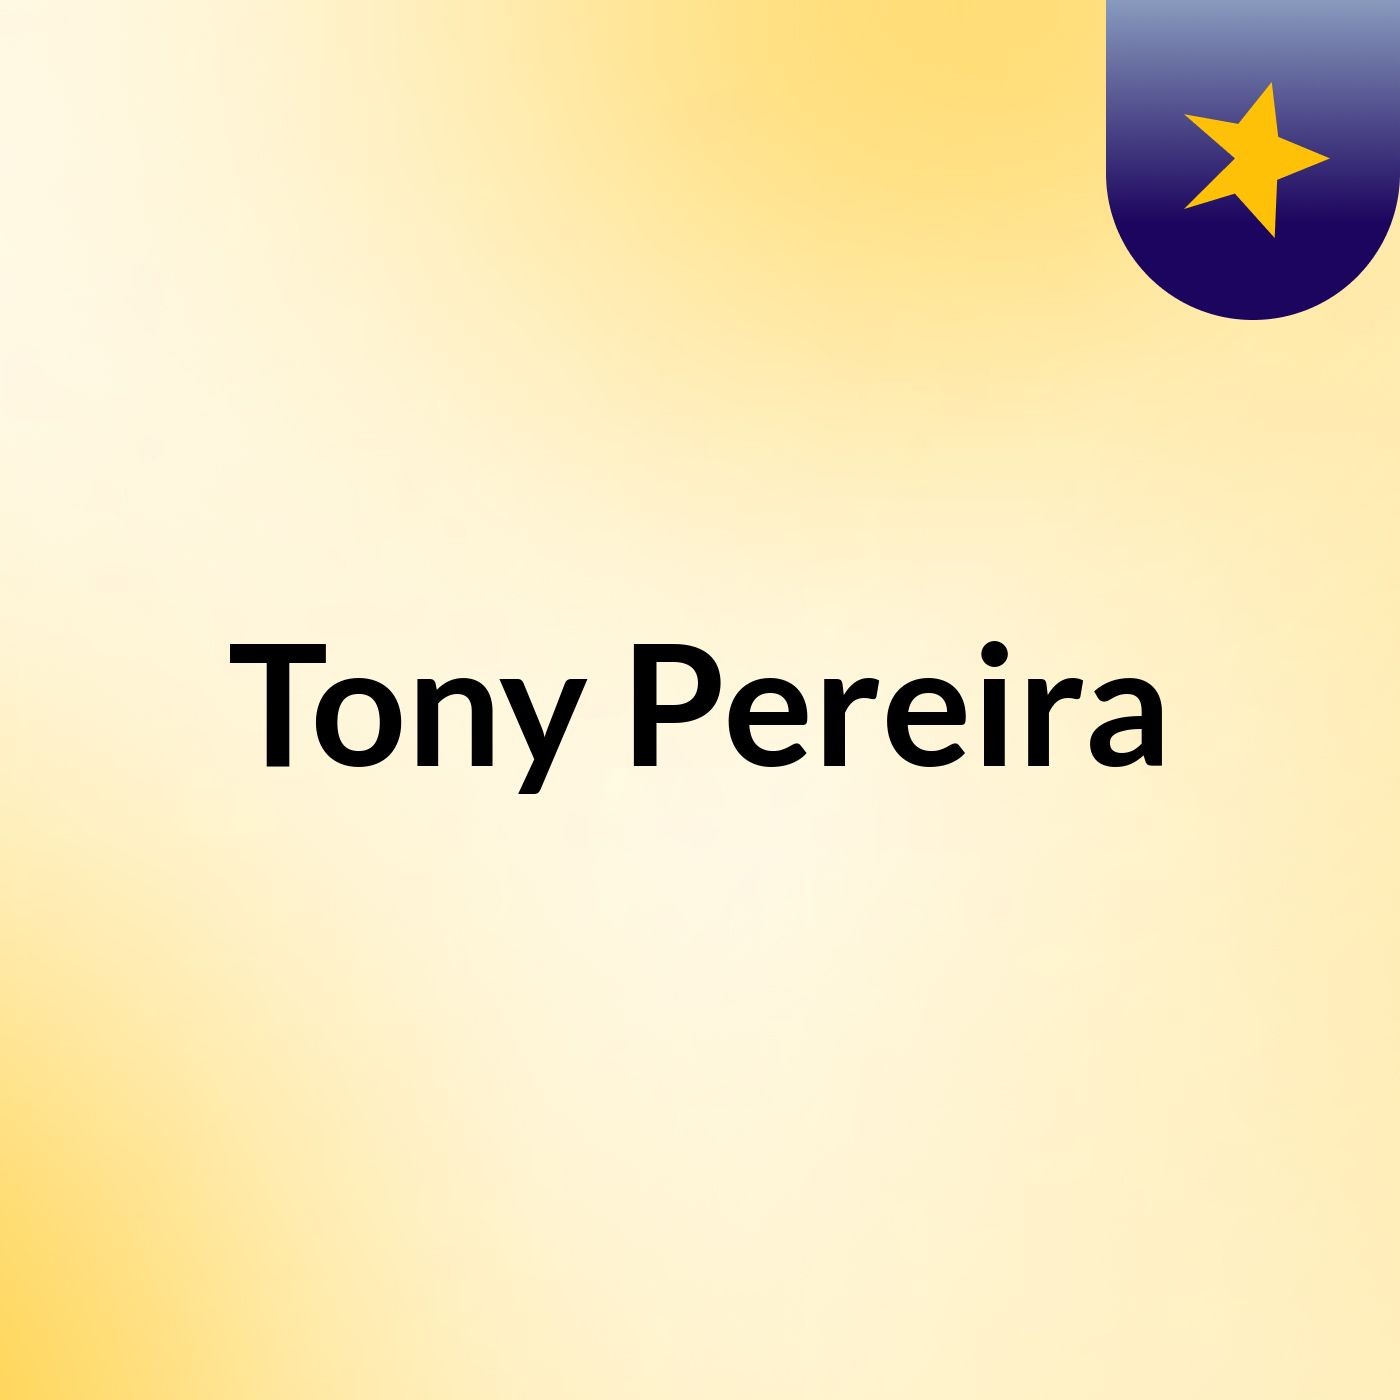 Tony Pereira